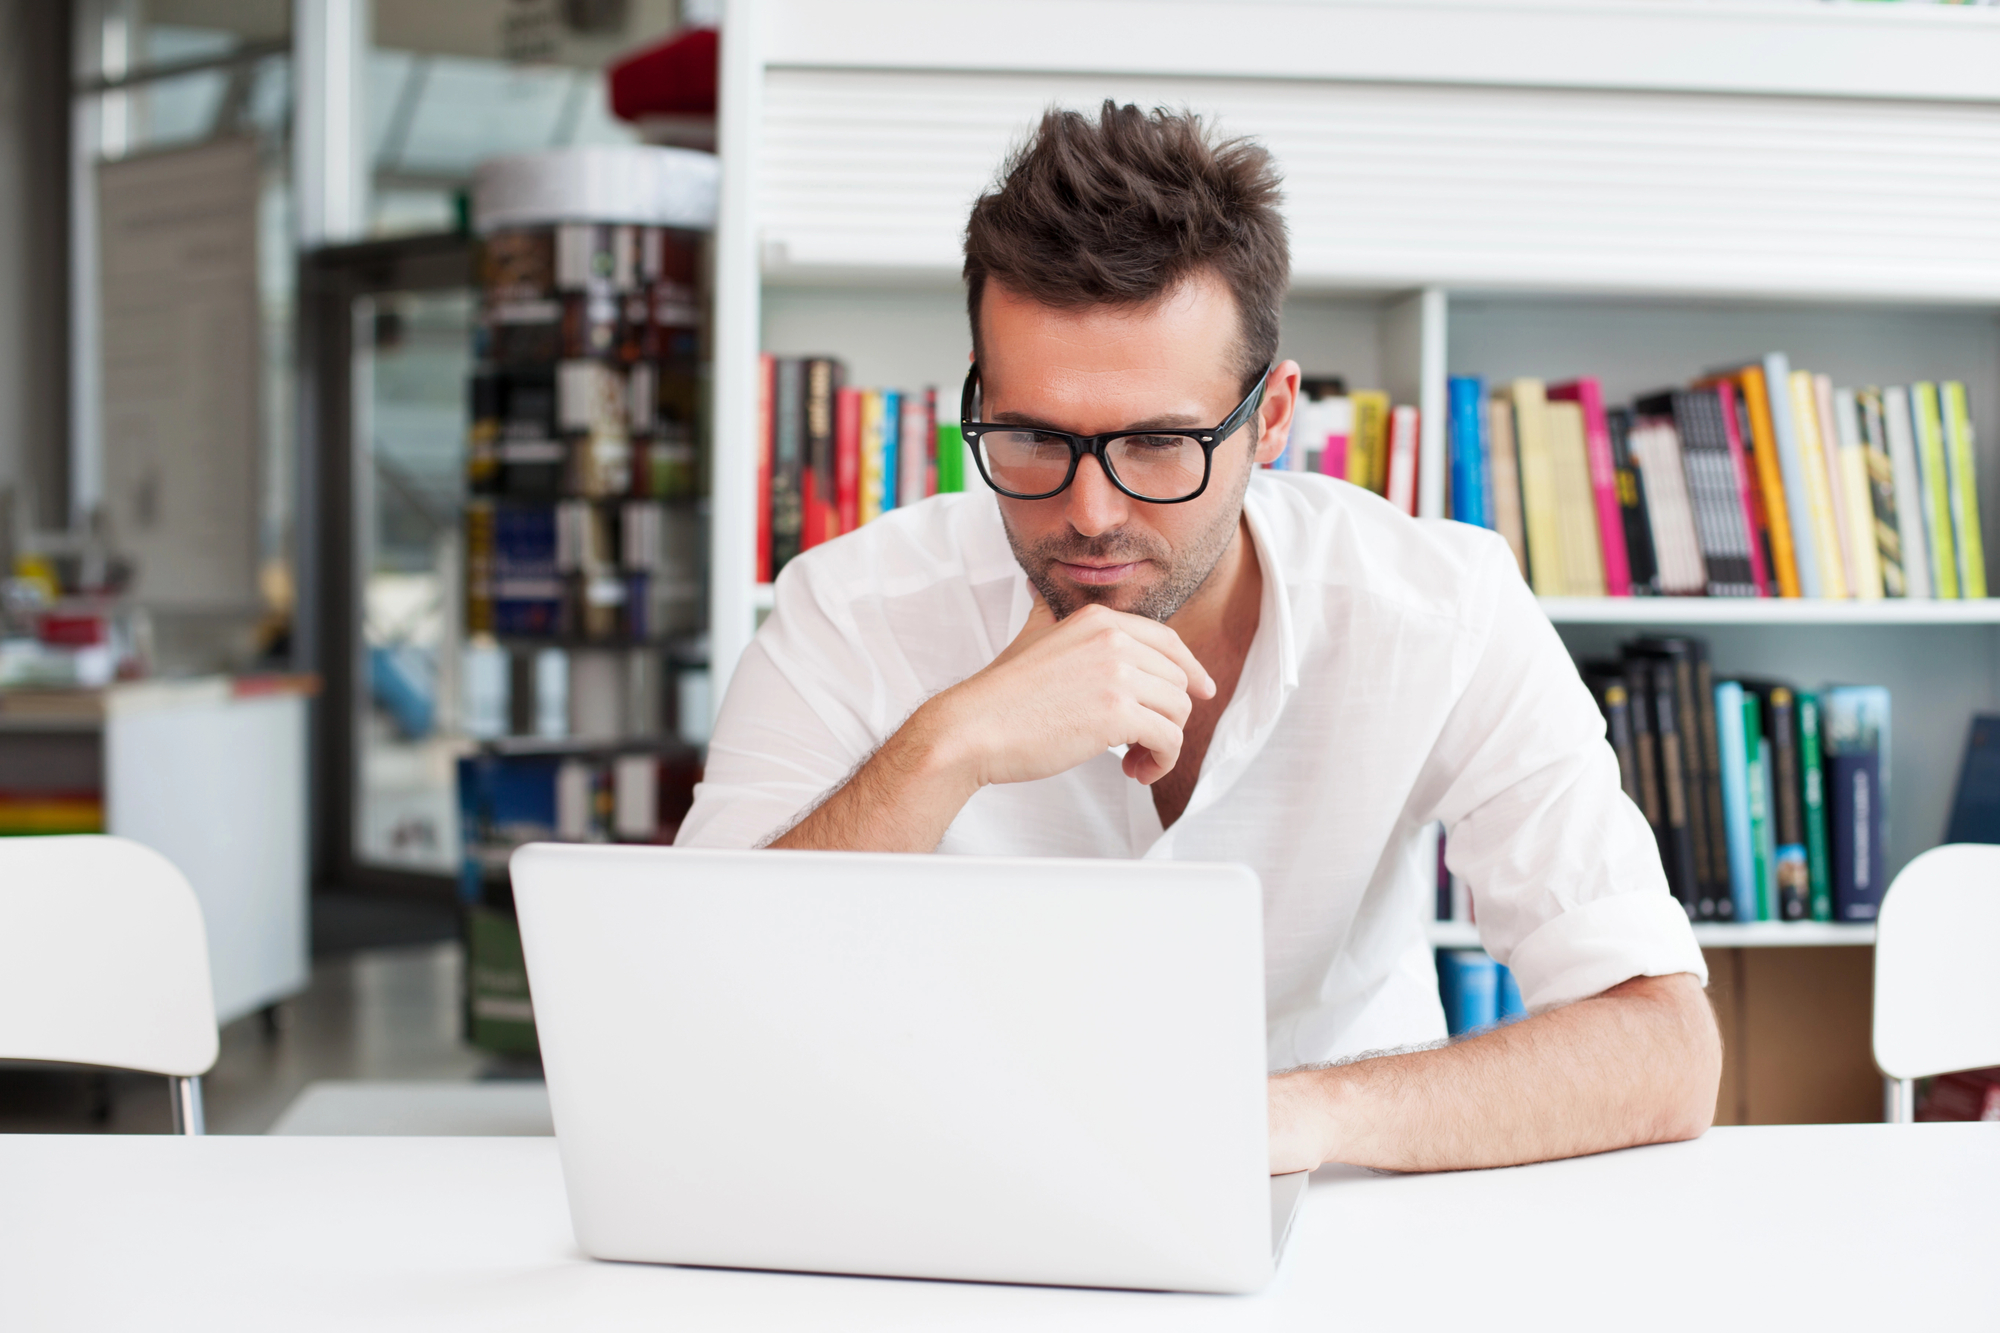 man van een jaar of 30 met een bril en een wit t-shirt zit achter een laptop